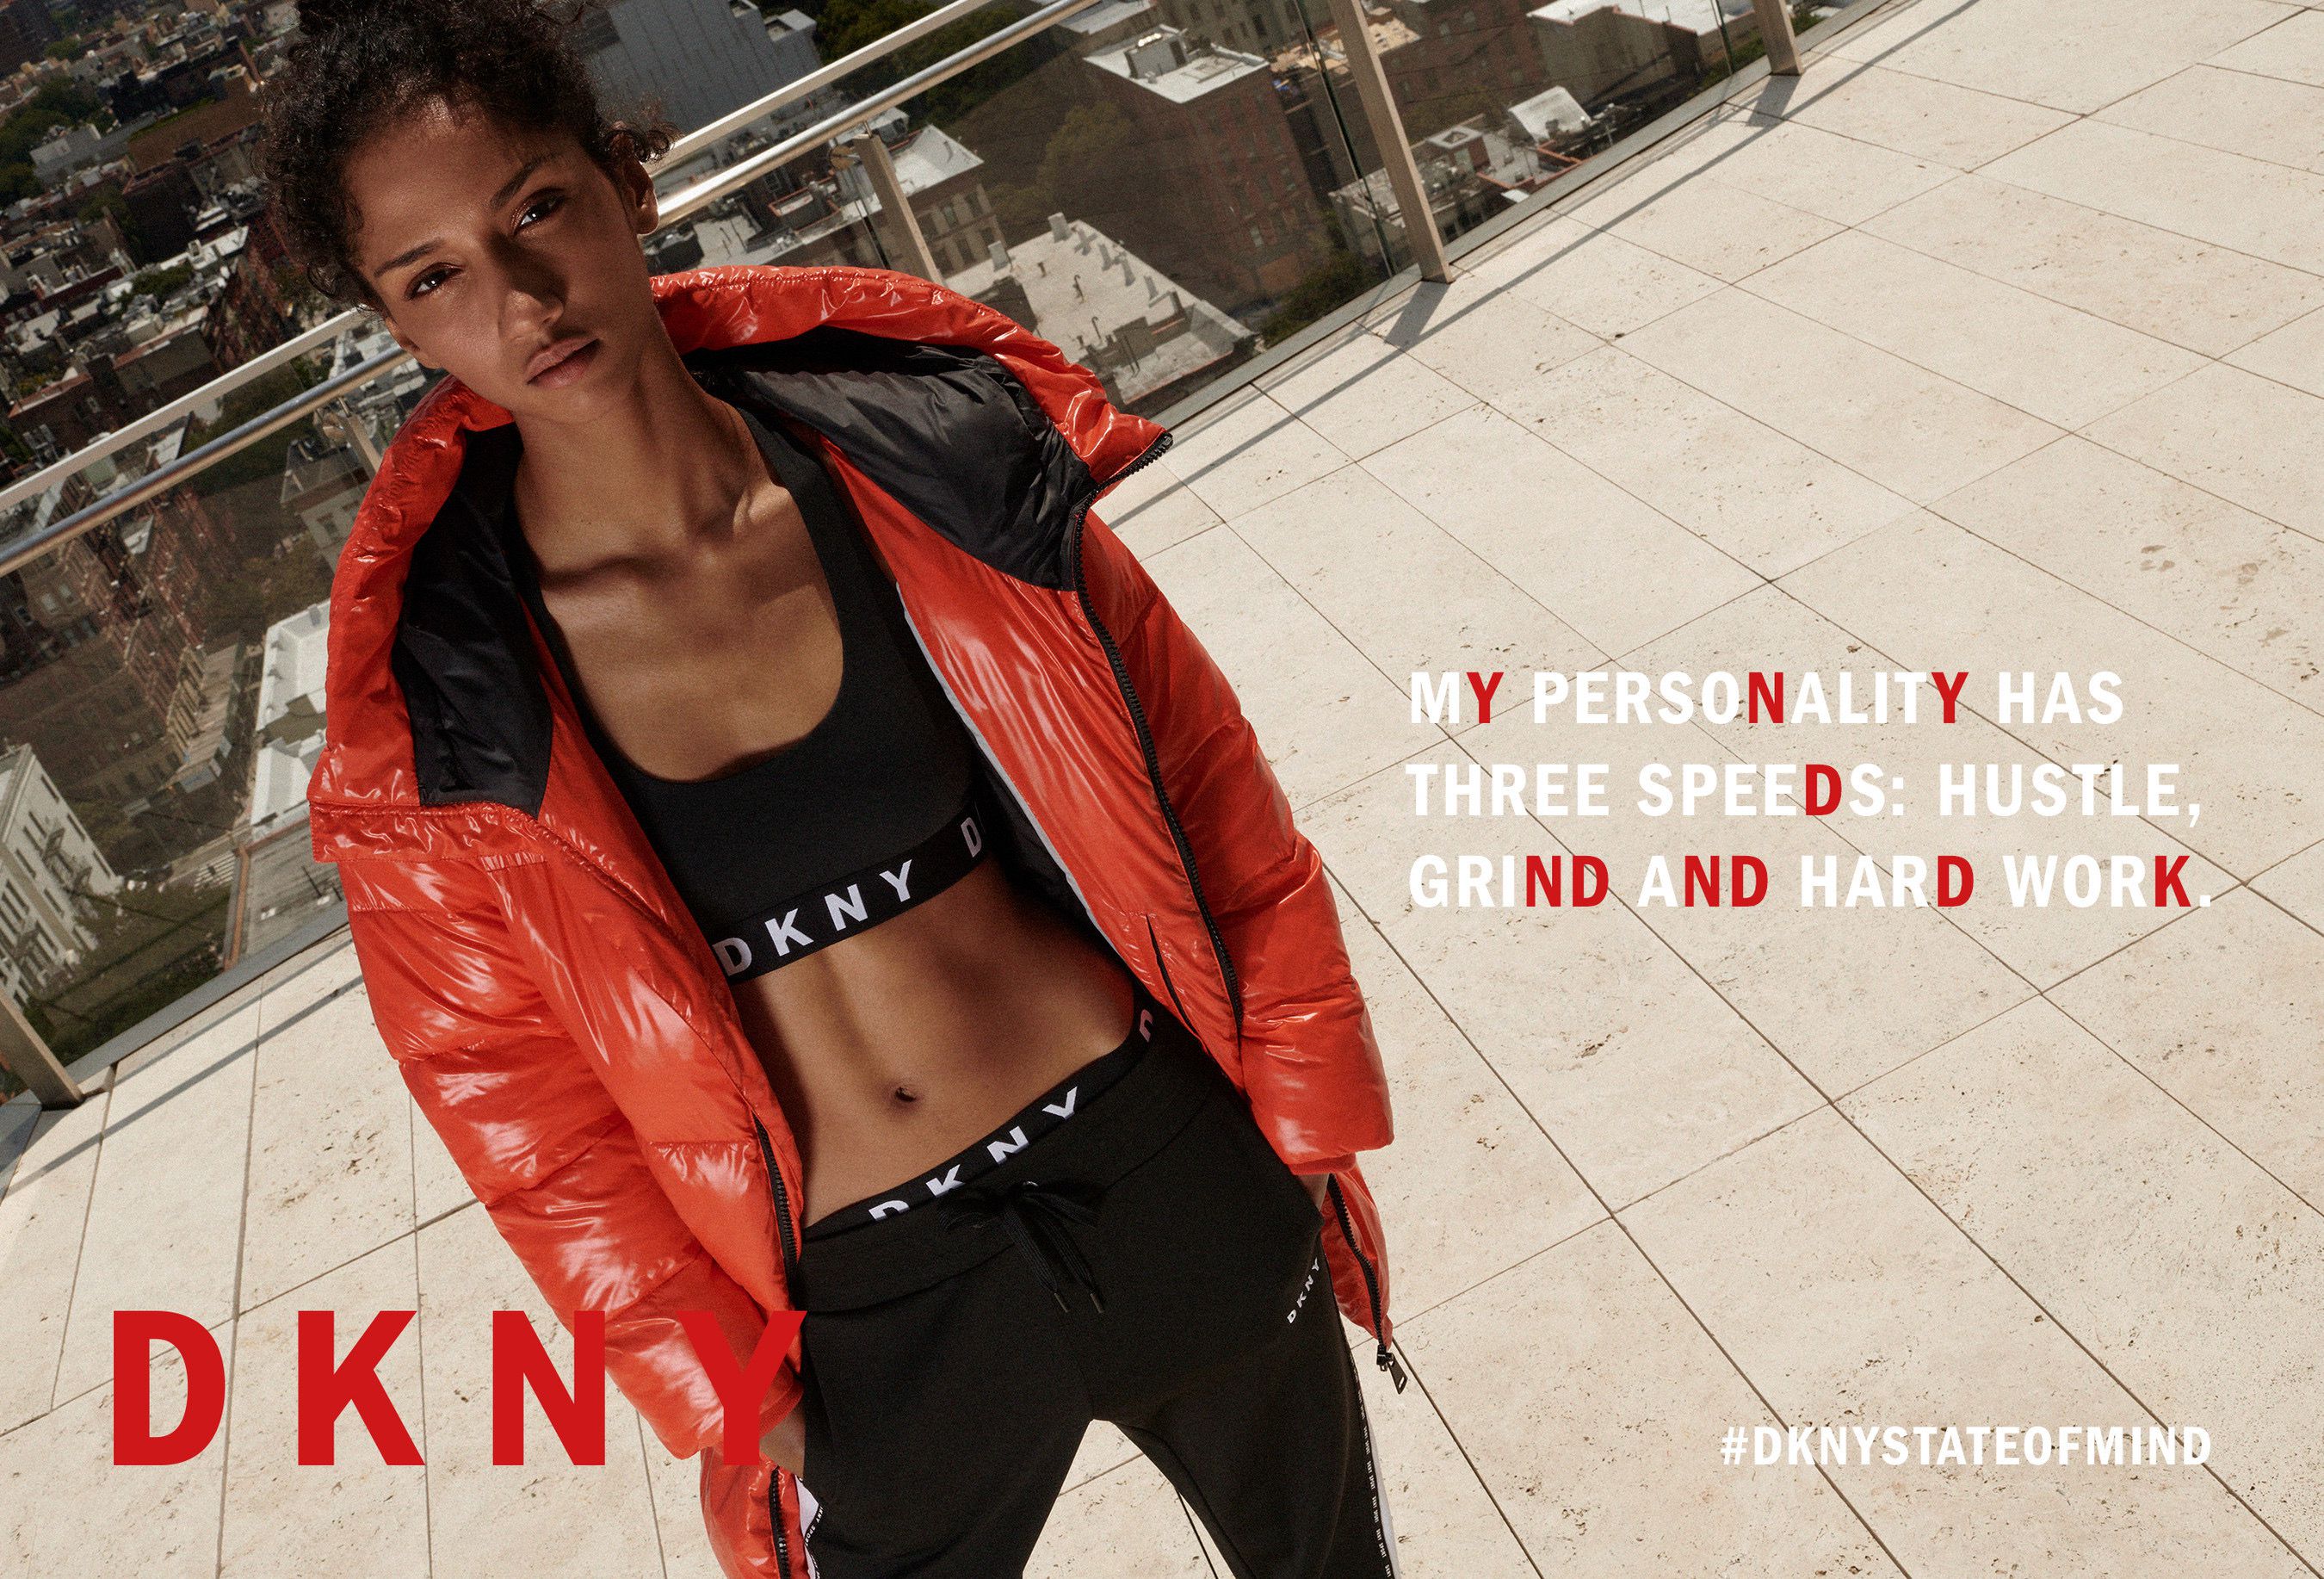 DKNY Fall 2023 Ad Campaign